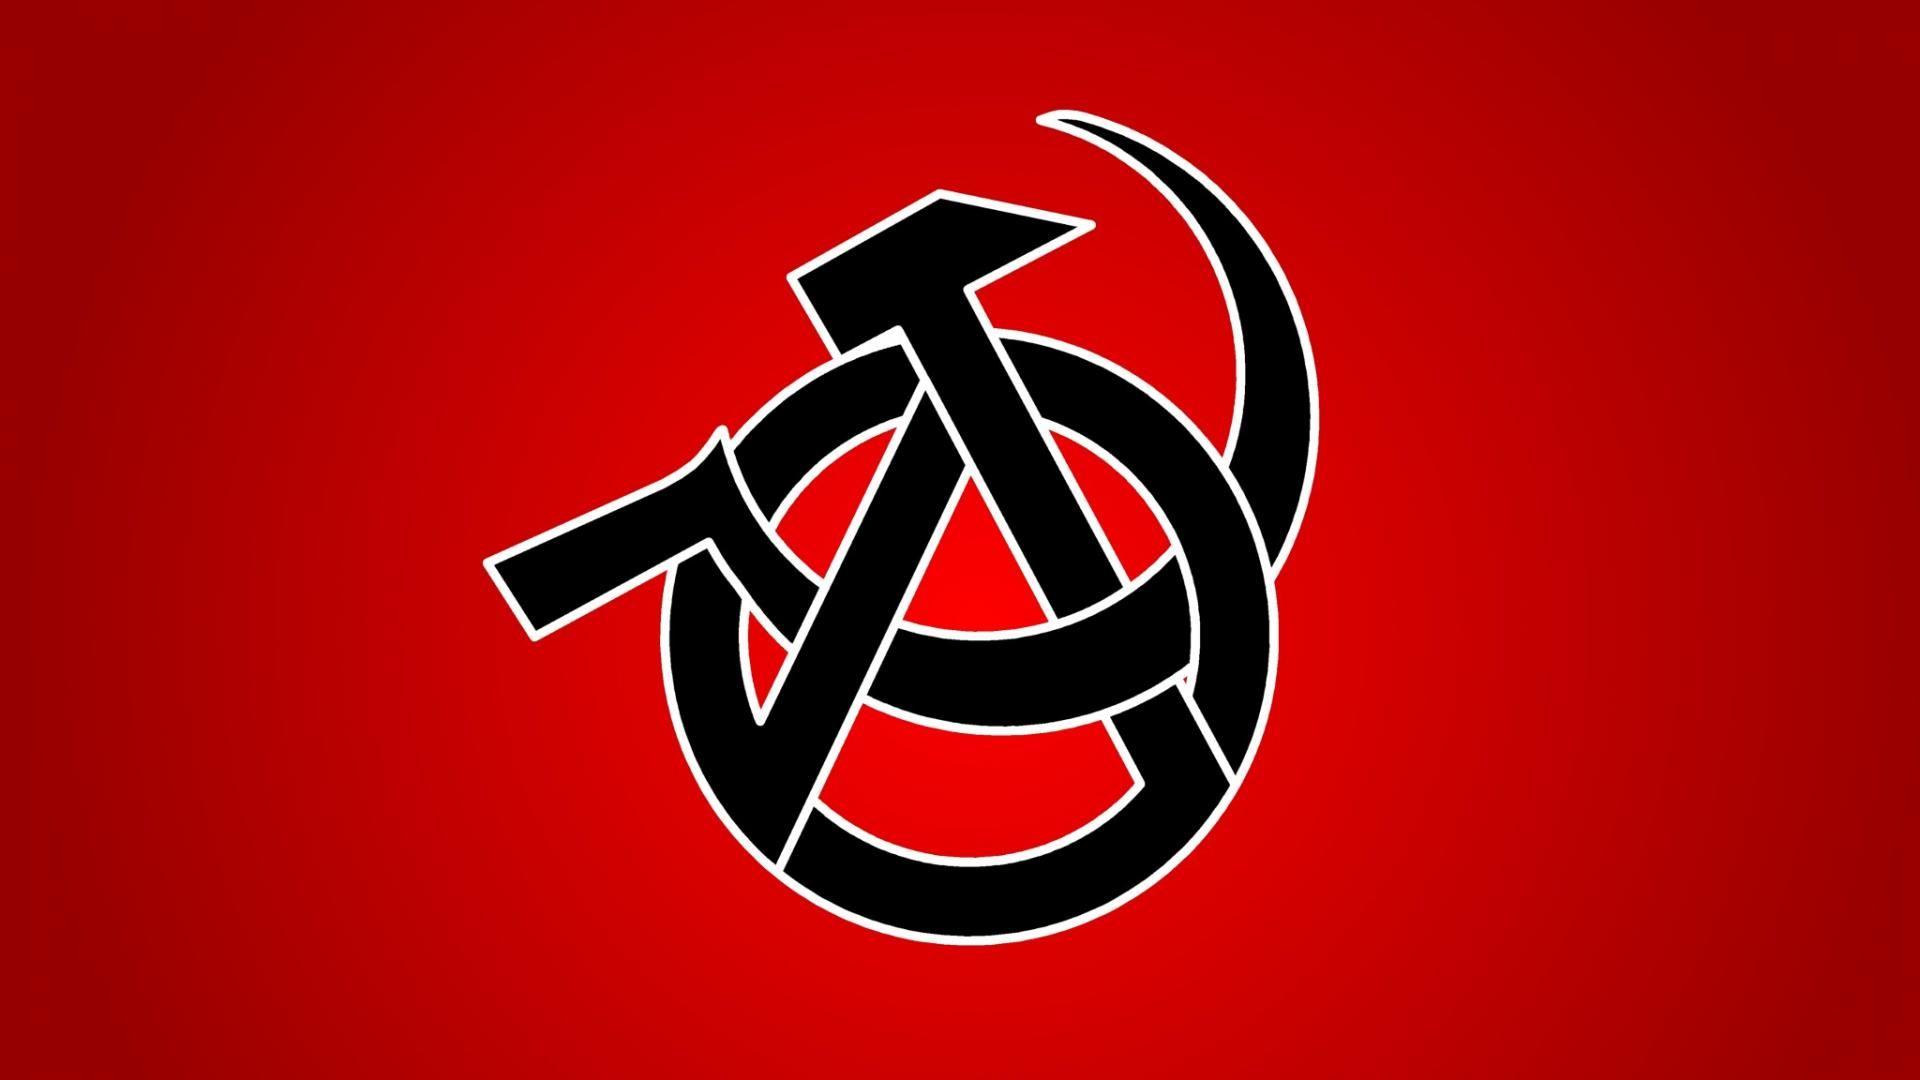 Revolution Anarchy Anarchism Anarcho Communism Anarcho Syndicalism